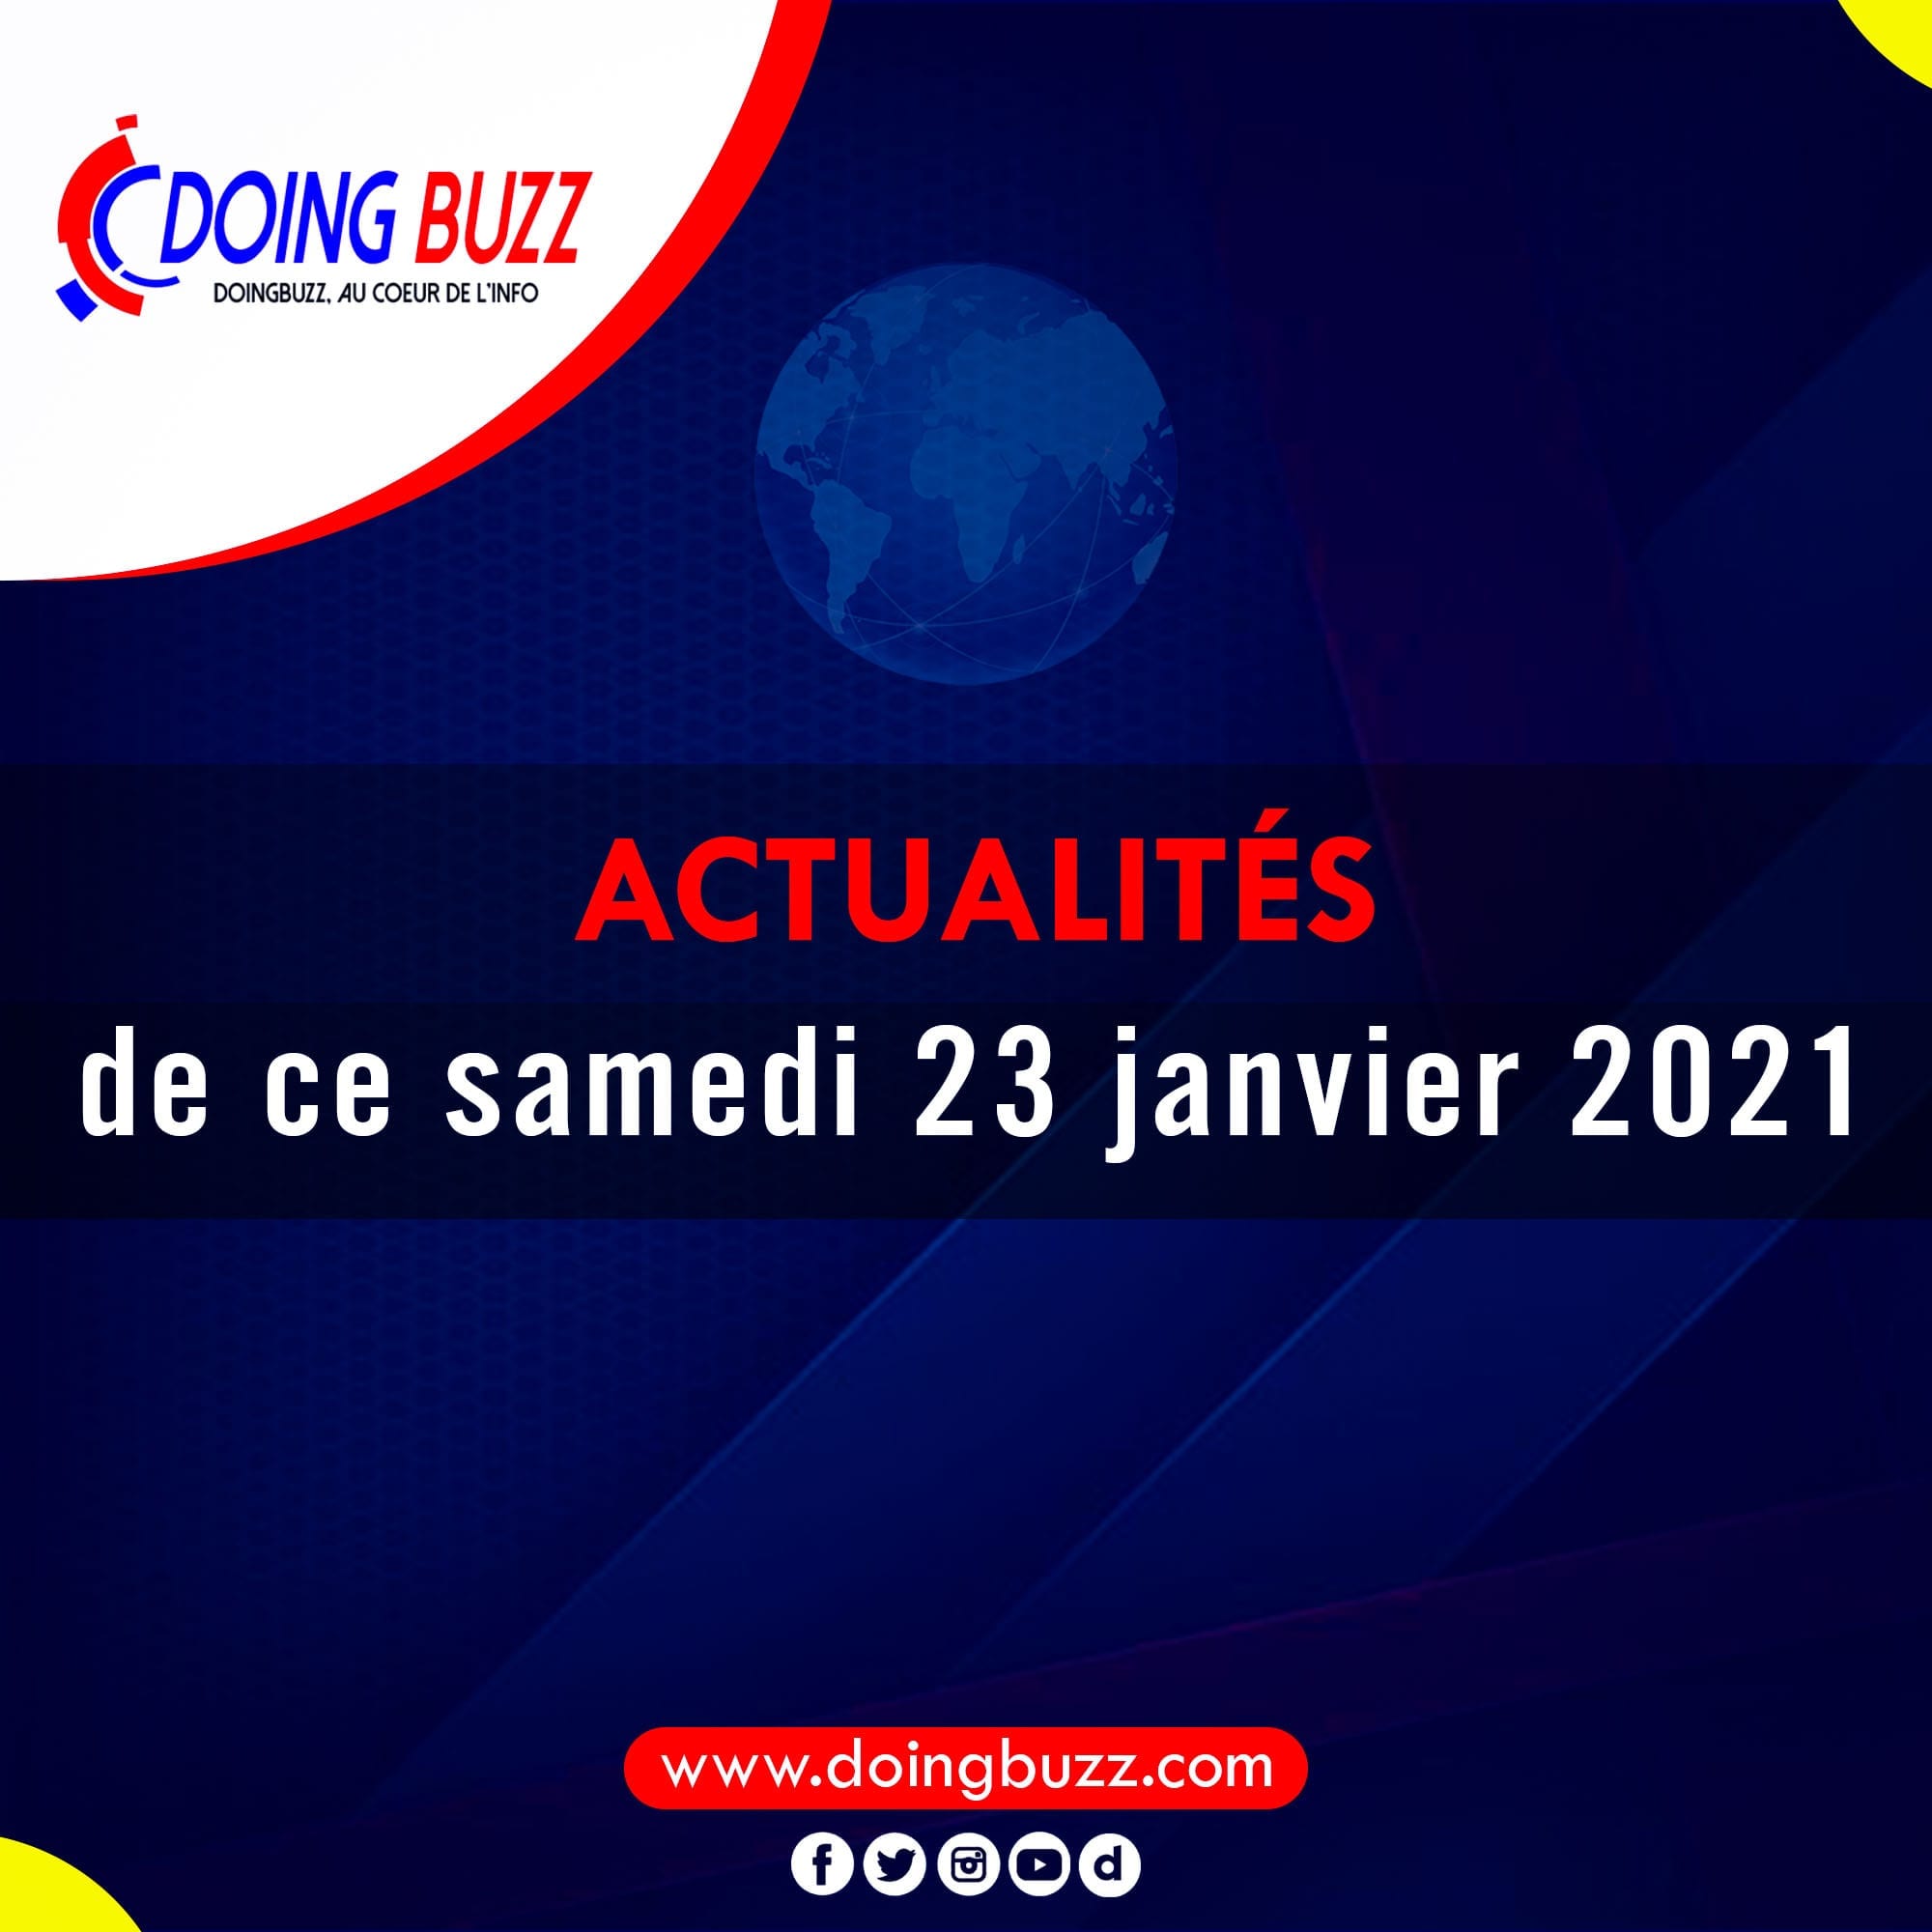 Actualités Du Jour Sur Doingbuzz: Samedi Le 23 Janvier 2021